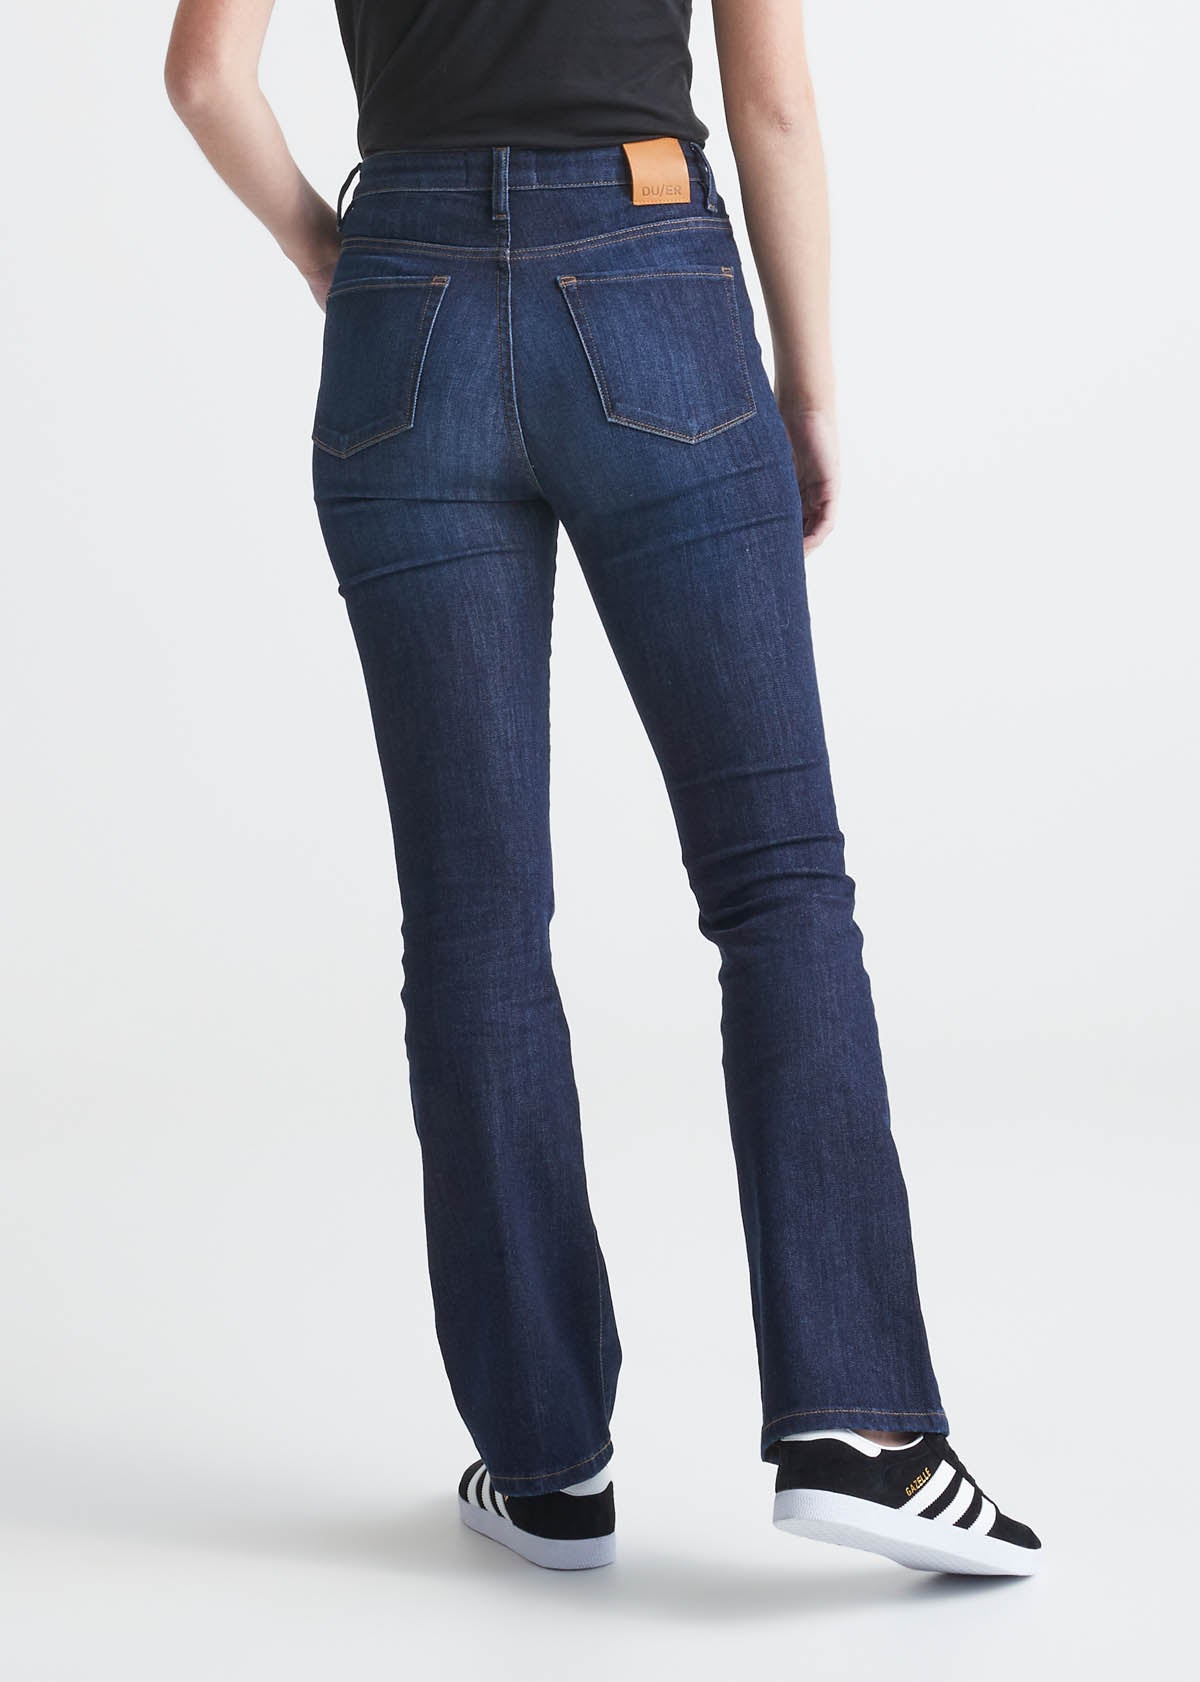 Women's High Waisted Boot Cut Jeans